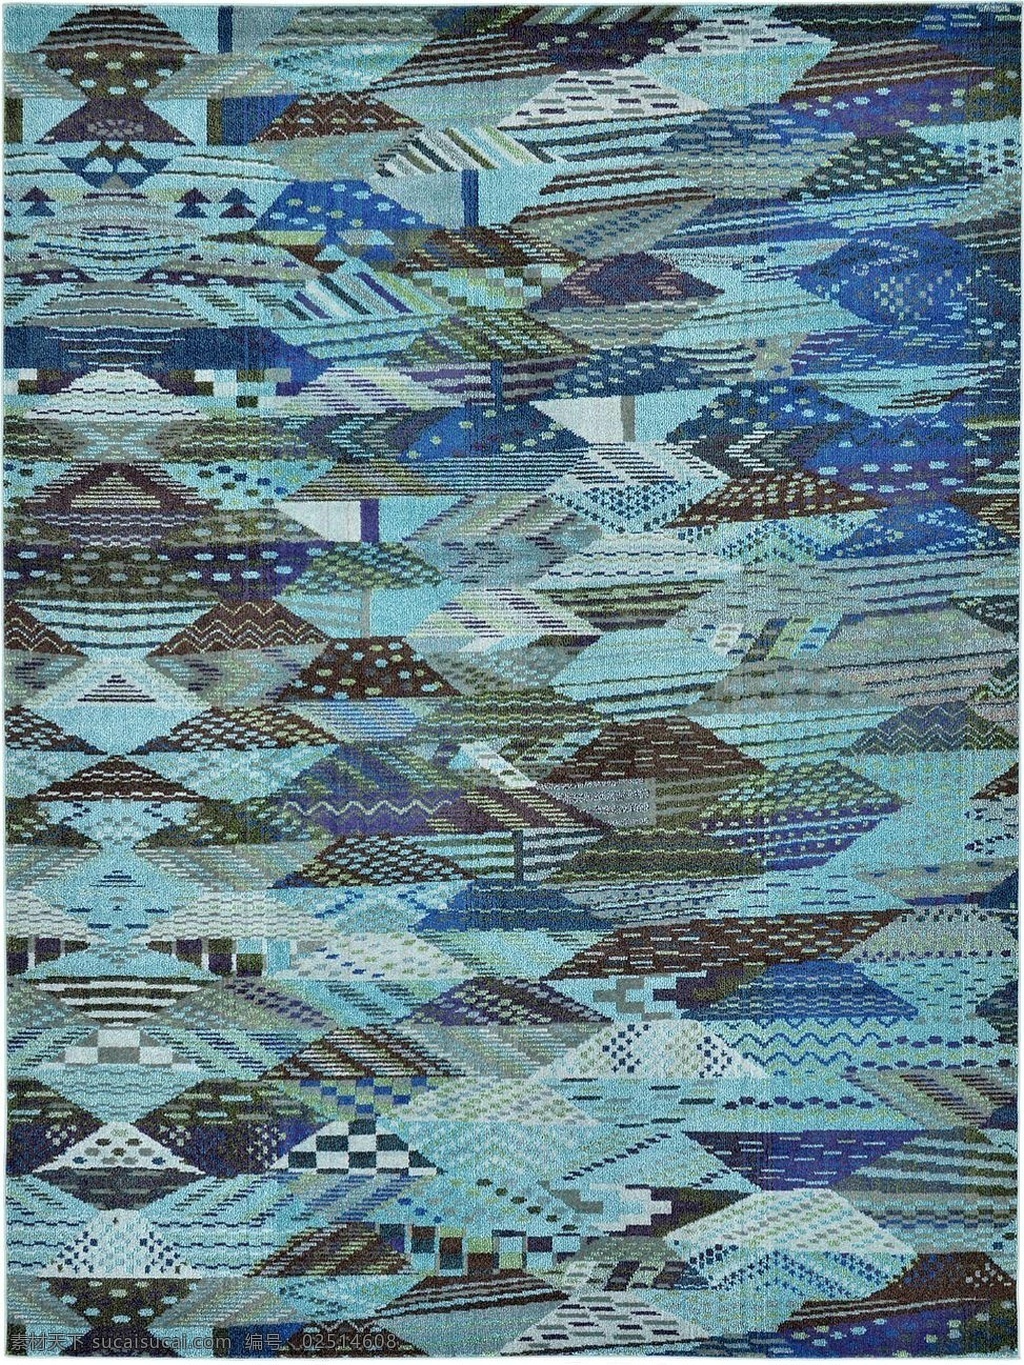 蓝色 地毯 拼图 图案 图案贴图 豹纹贴图 花边地毯 方形贴图 家庭地毯贴图 家庭式地毯 欧式风格地毯